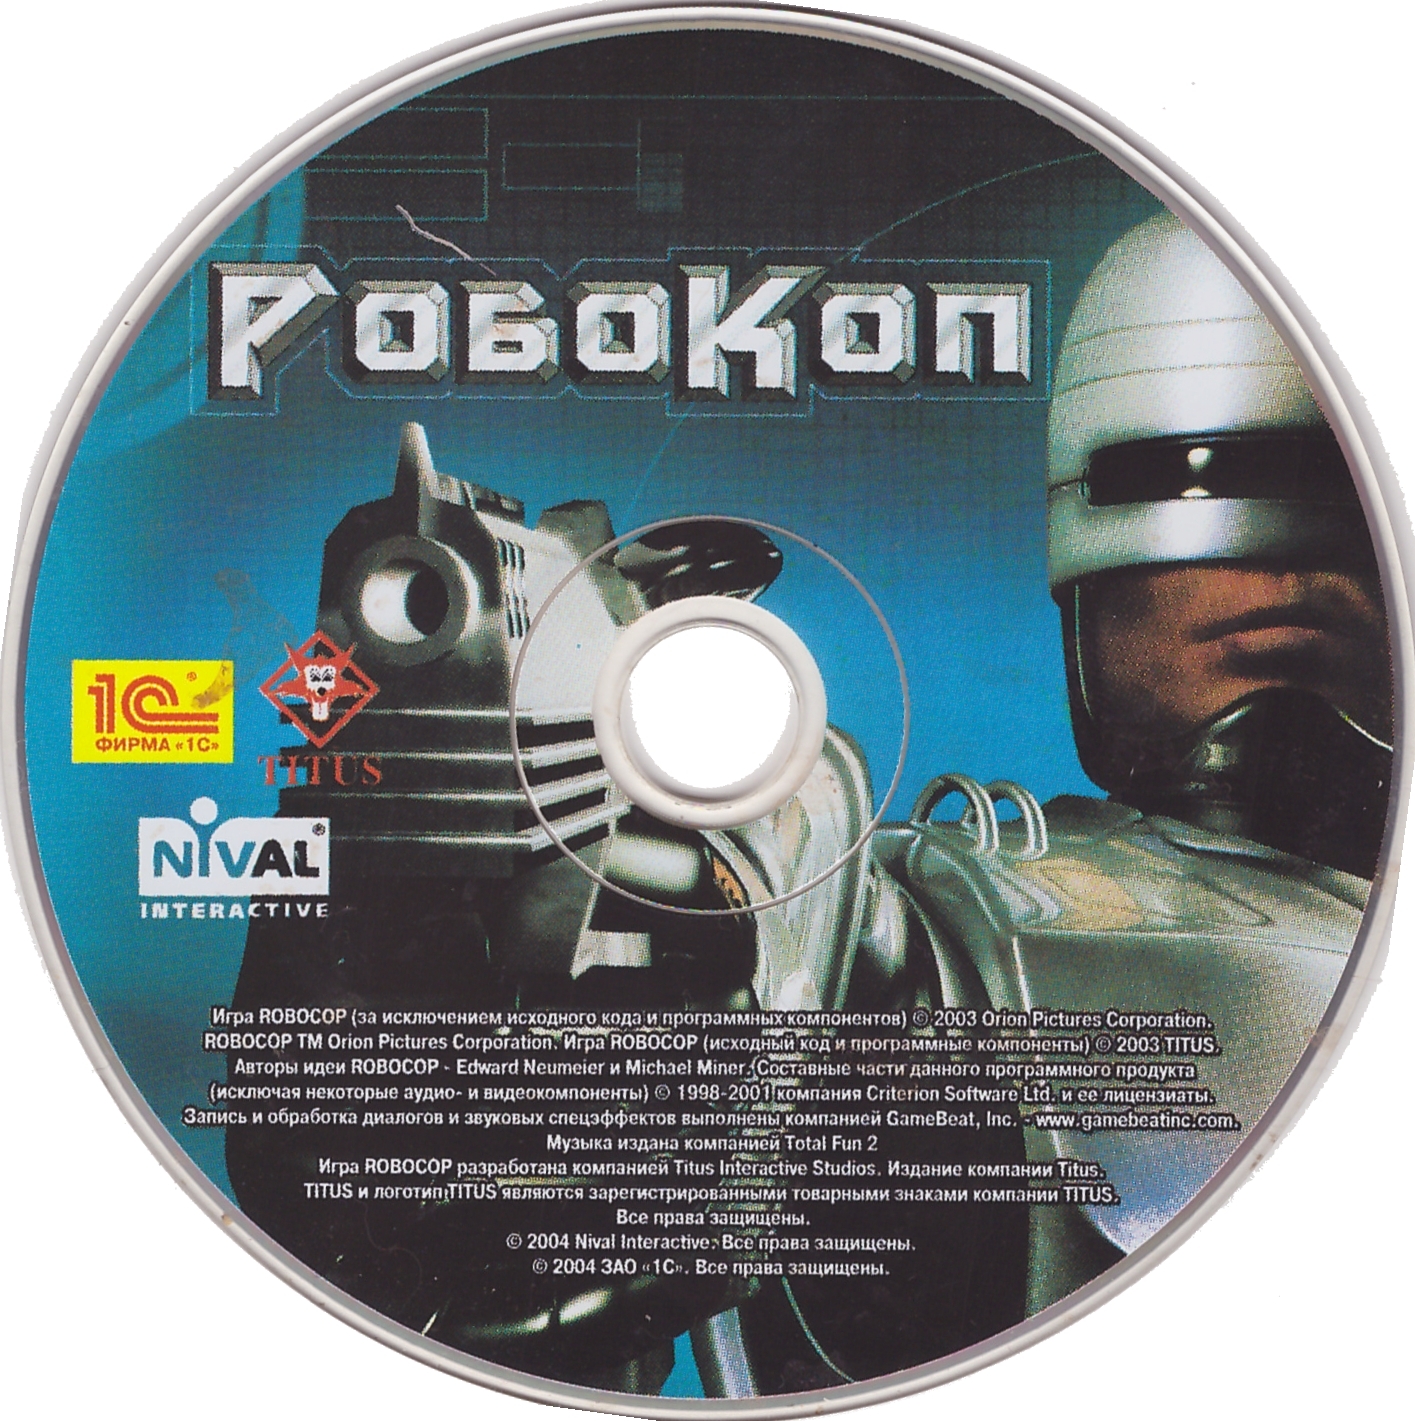 Робокоп игра 2003. Robocop ps2 Cover. Игра про робокопа 2003. Robocop 2 NES Cover.